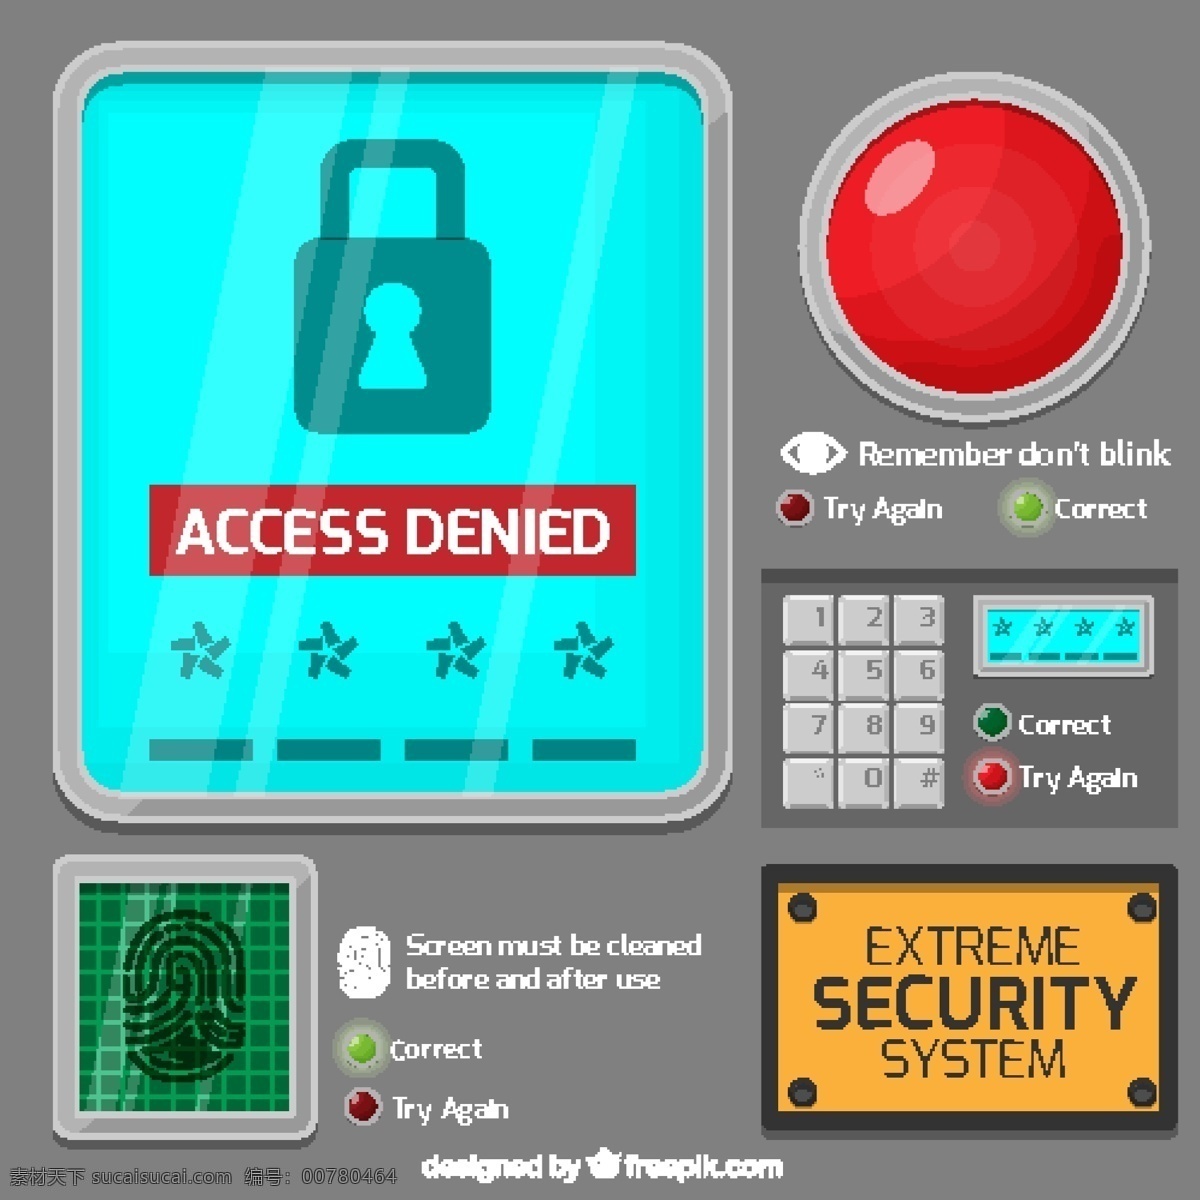 电脑 网络安全 系统 操作 背景 网络安全系统 操作背景 蓝色橙色 电脑安全 元素图标 wifi图标 红色按钮 锁具插图 键盘图标 警示图标 蓝色方形背景